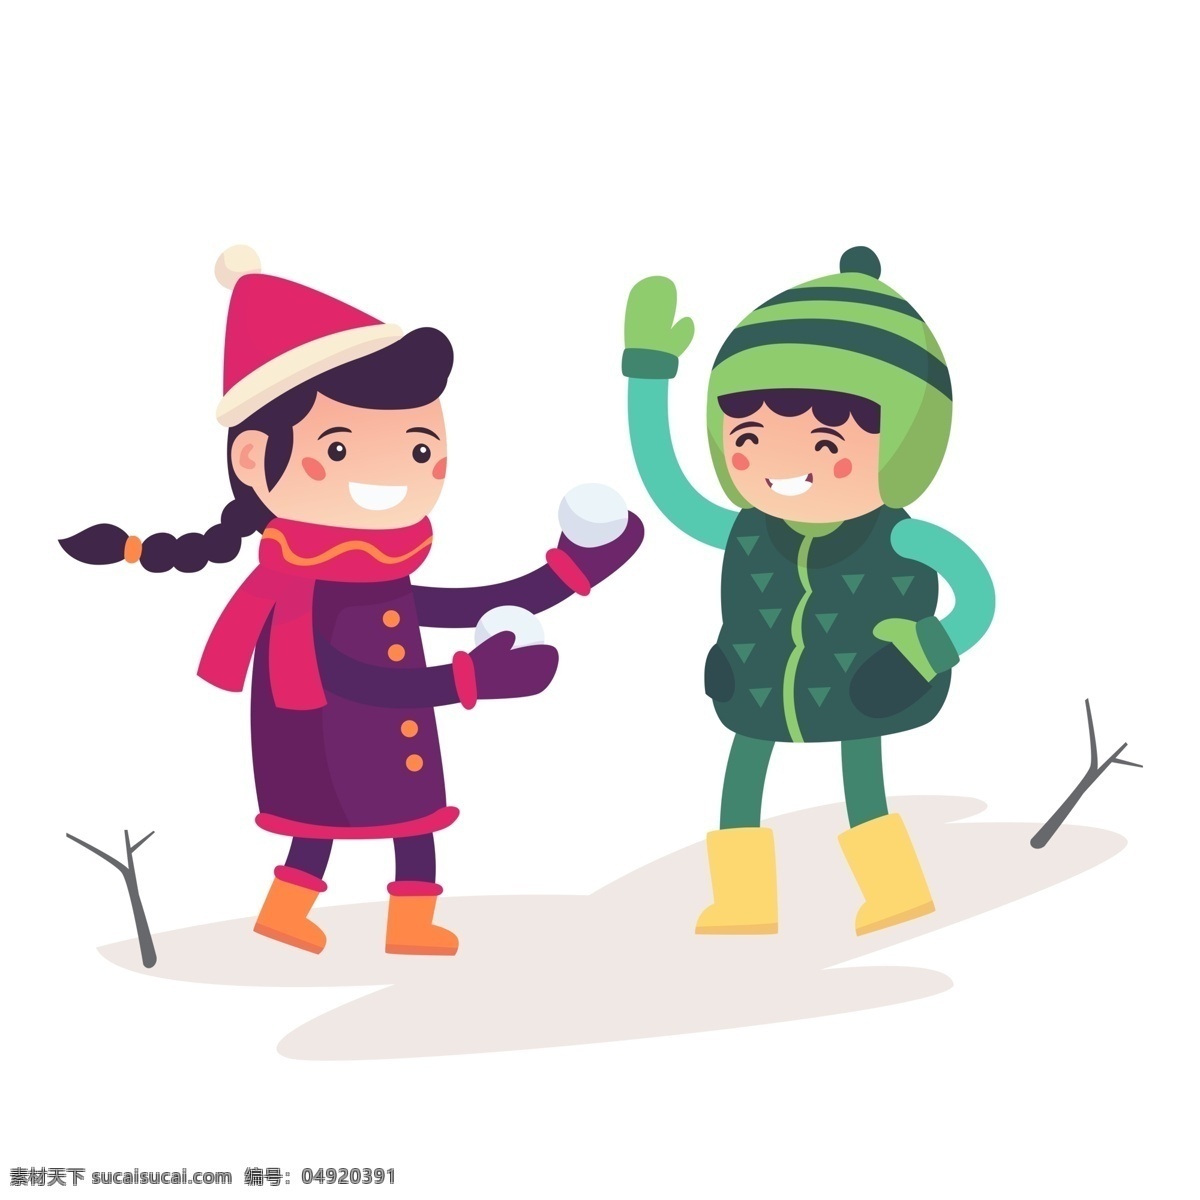 圣诞节 冬季 下雪天 打雪仗 小孩 插画 雪地 户外玩耍运动 玩耍的小孩 打雪仗的小孩 白色圣诞节